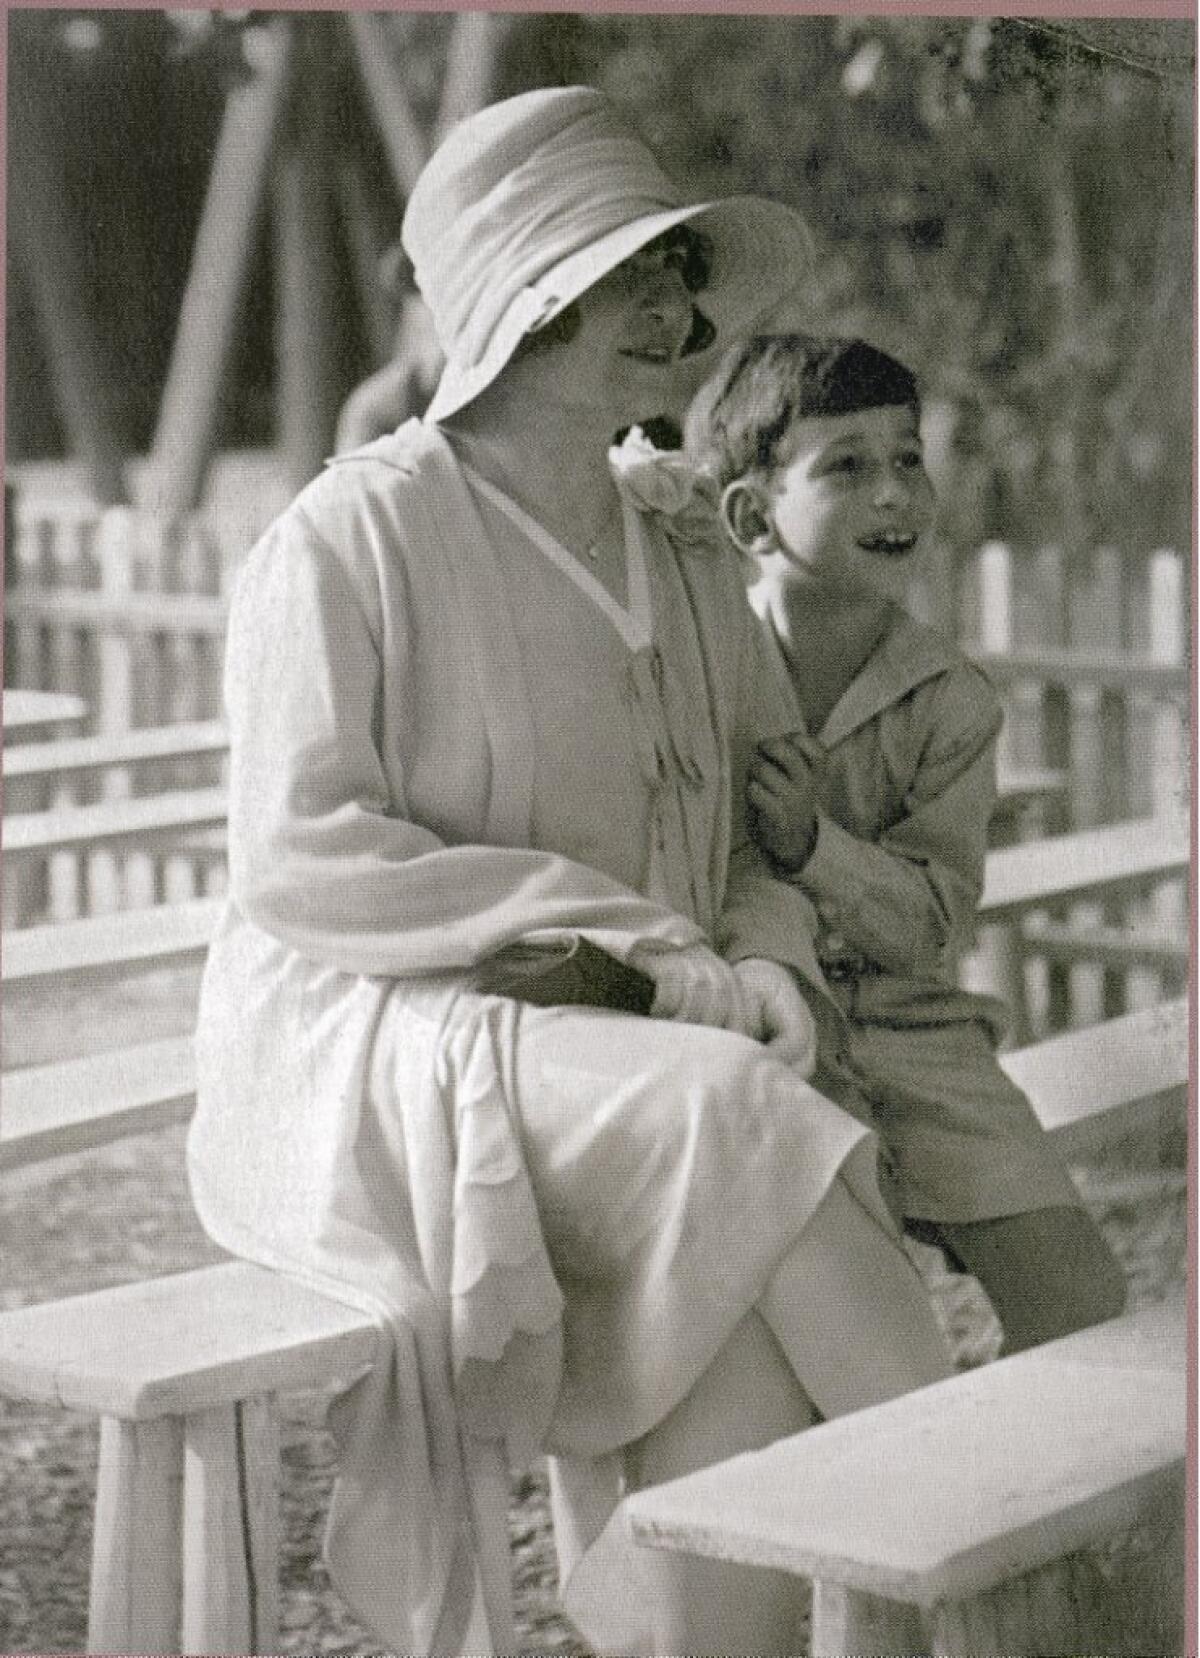 Фотография предоставлена ​​семьей Клода Кассирера в детстве с его бабушкой Лилли Кассирер.